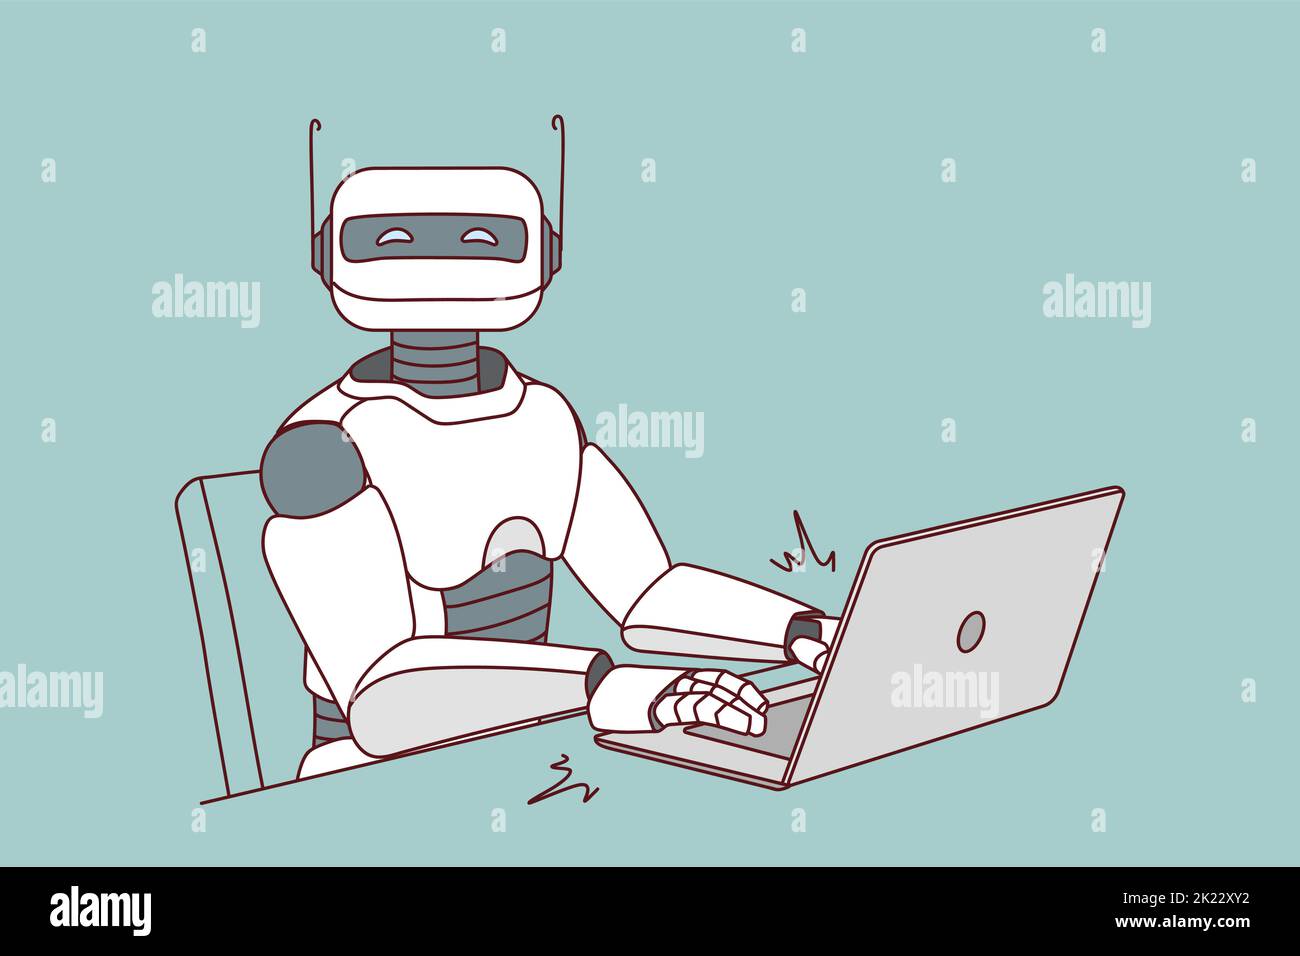 Robot trabajando en el ordenador de la oficina. Mecanografía humanoide moderna en el ordenador portátil. Concepto de inteligencia artificial. Asistente robótico en el lugar de trabajo. Ilustración vectorial. Ilustración del Vector